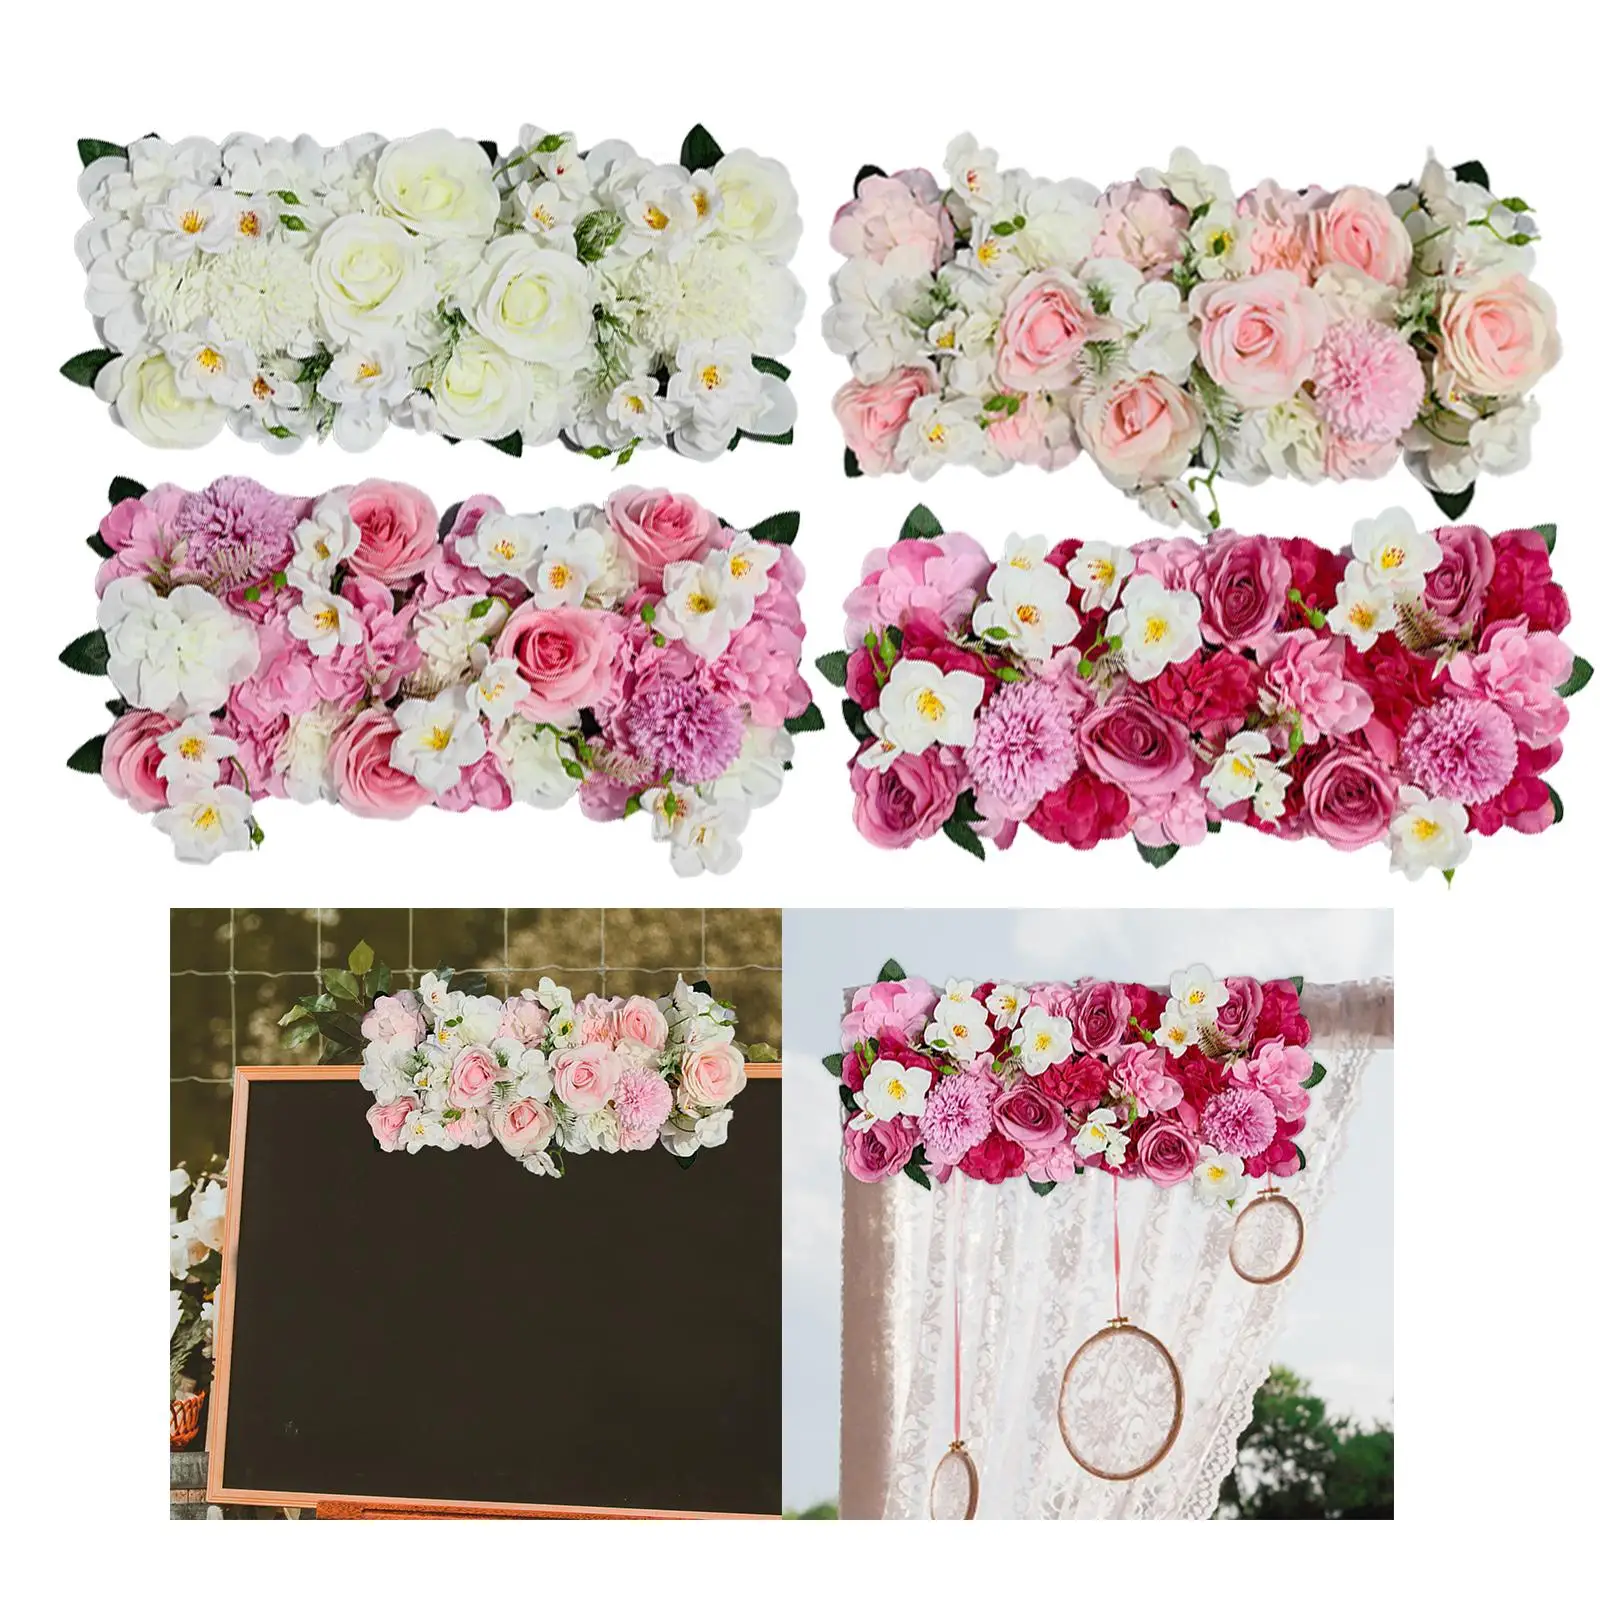 Wedding Flower Wall Arrangement Decor Arrangement for Party Window Art Hall